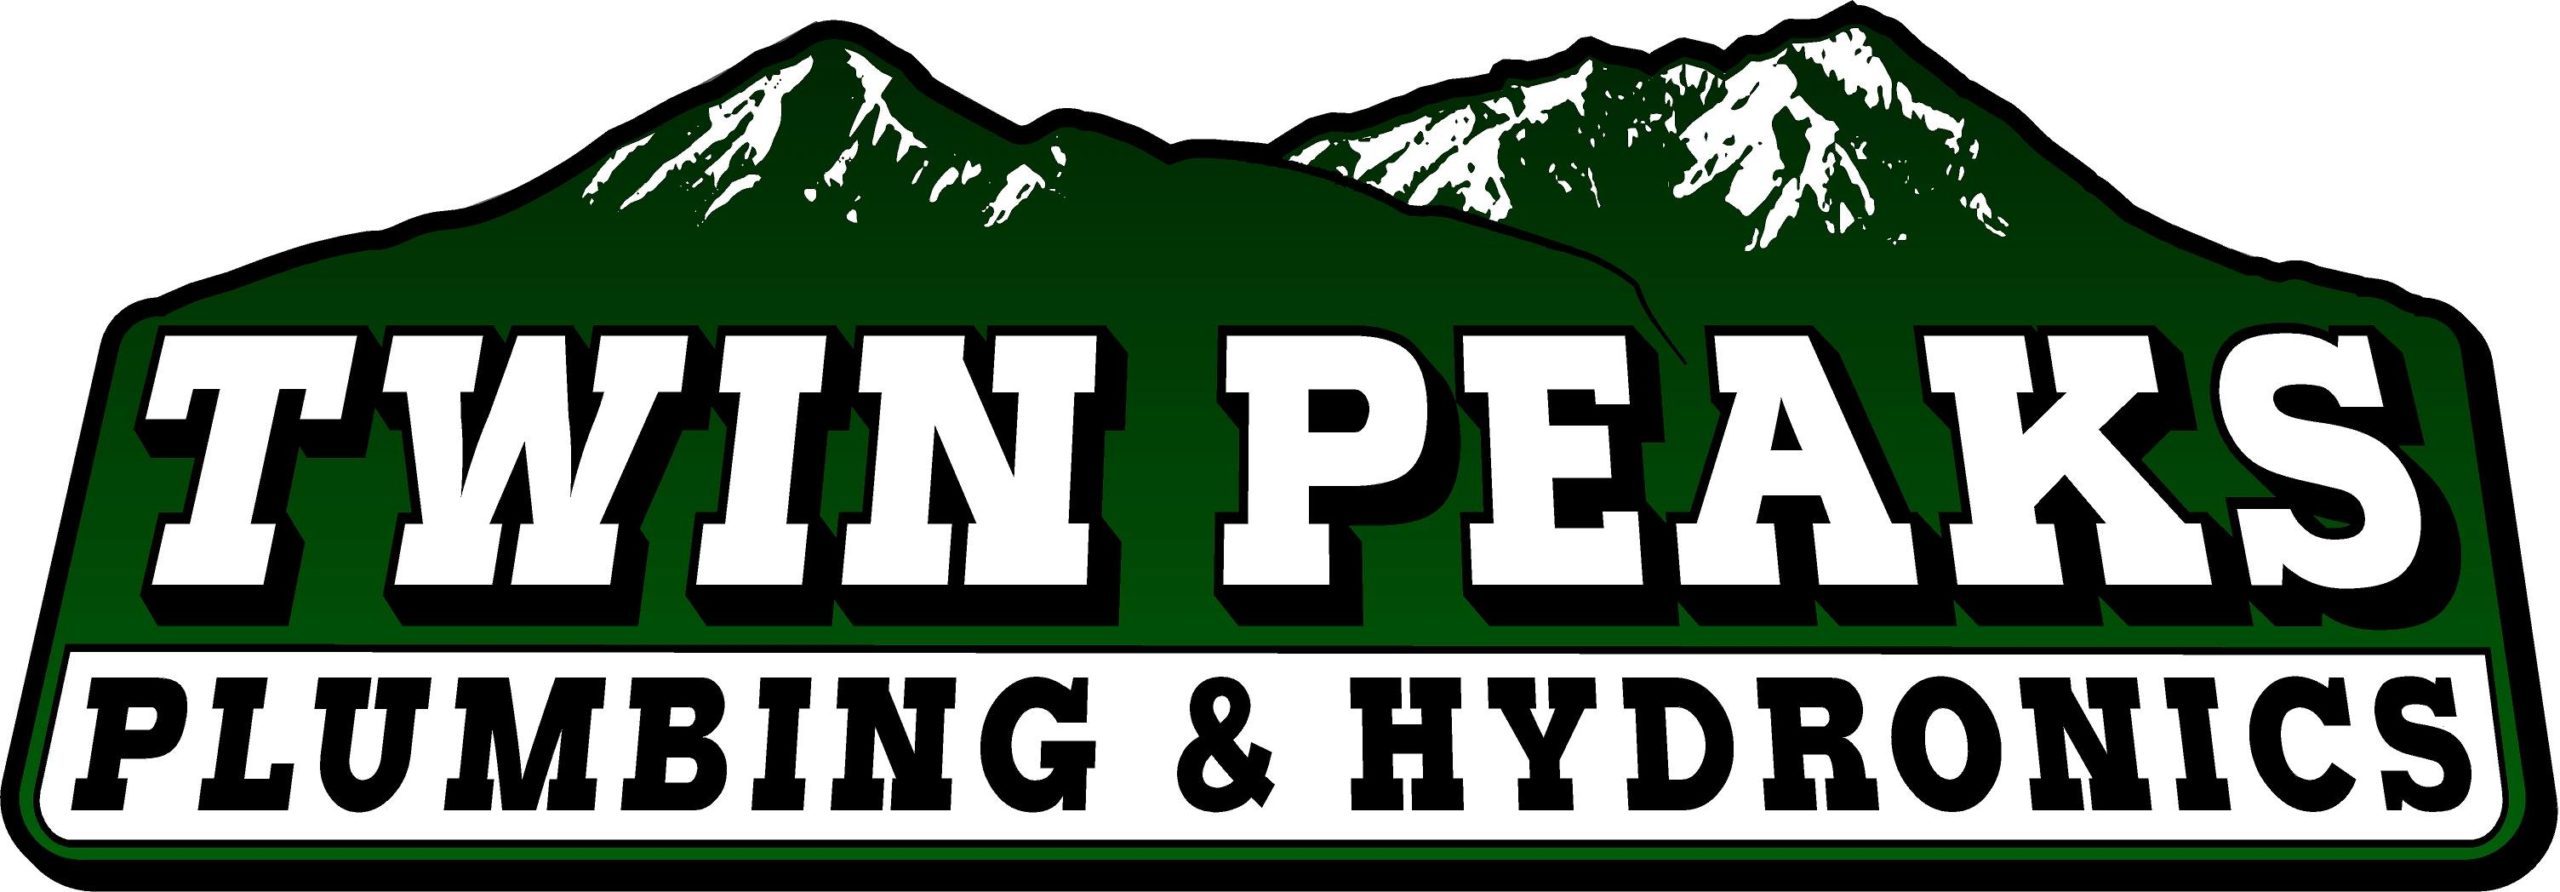 Twin Peaks Plumbing & Hydronics